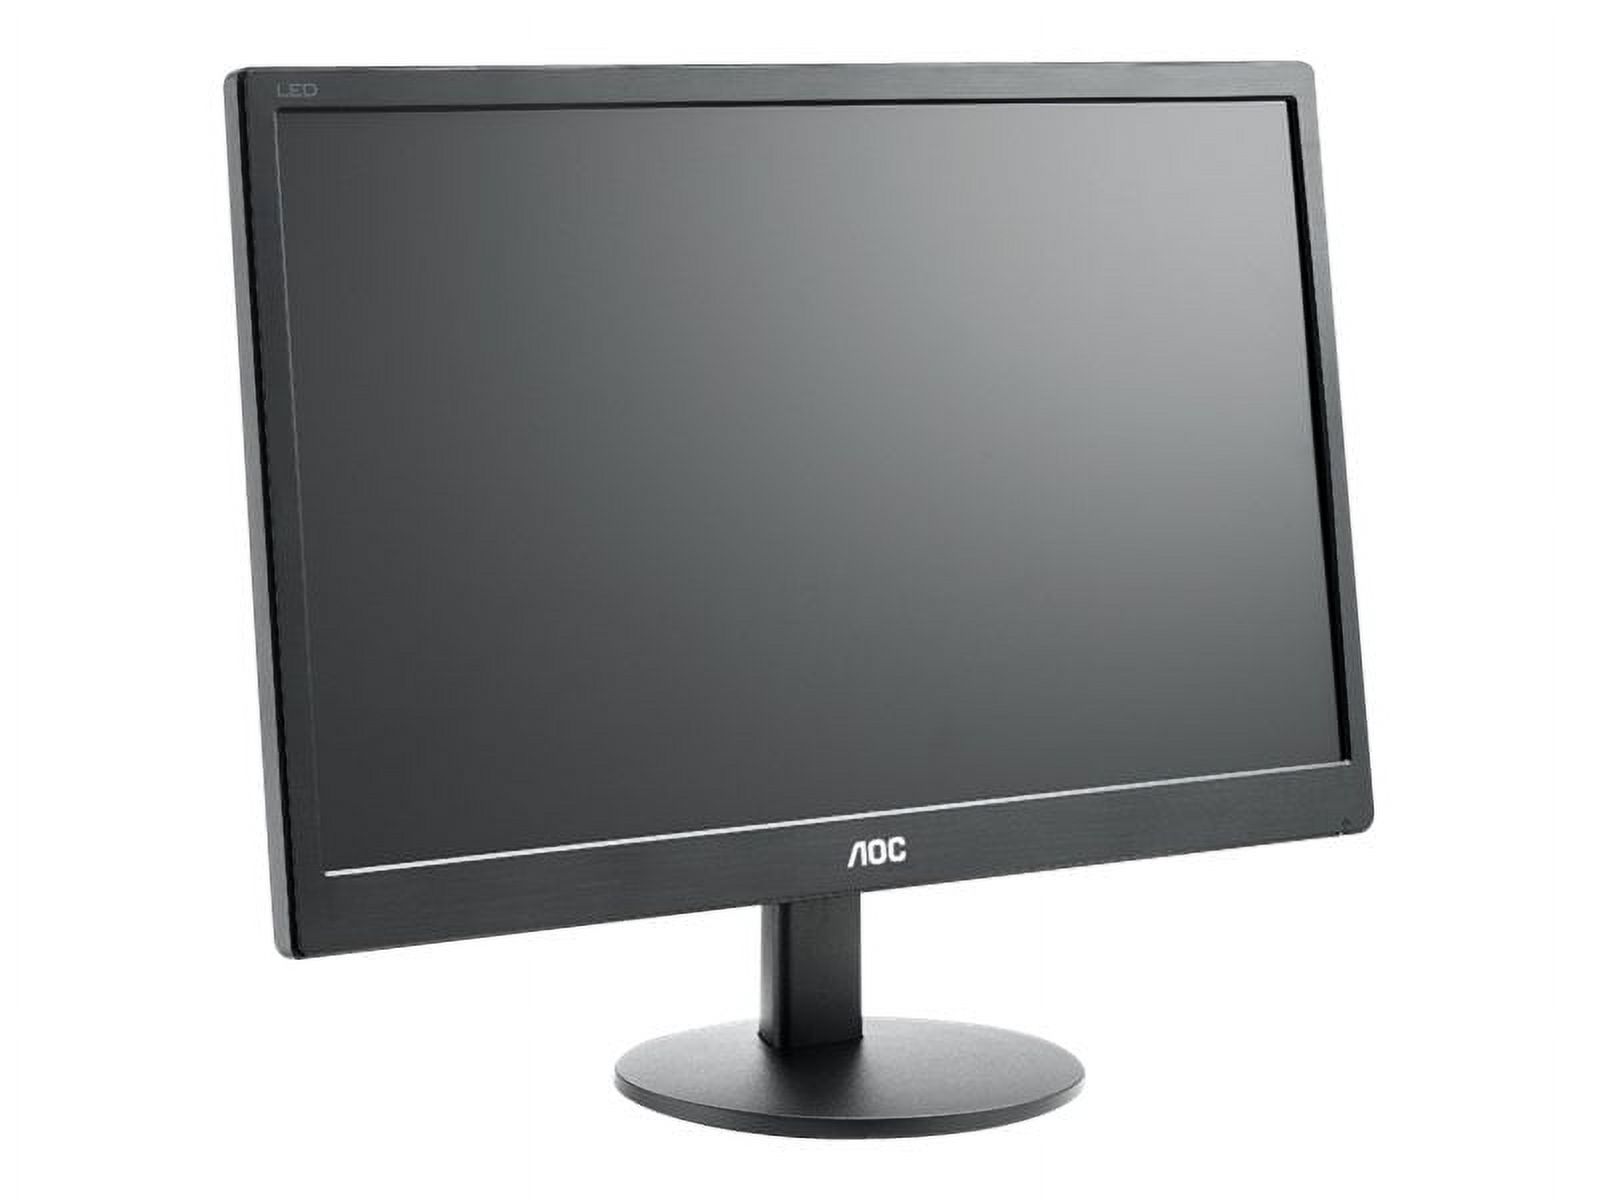 AOC E970SWN - LED monitor - 18.5" - 1366 x 768 @ 60 Hz - TN - 200 cd/m������ - 700:1 - 5 ms - VGA - black - image 3 of 6